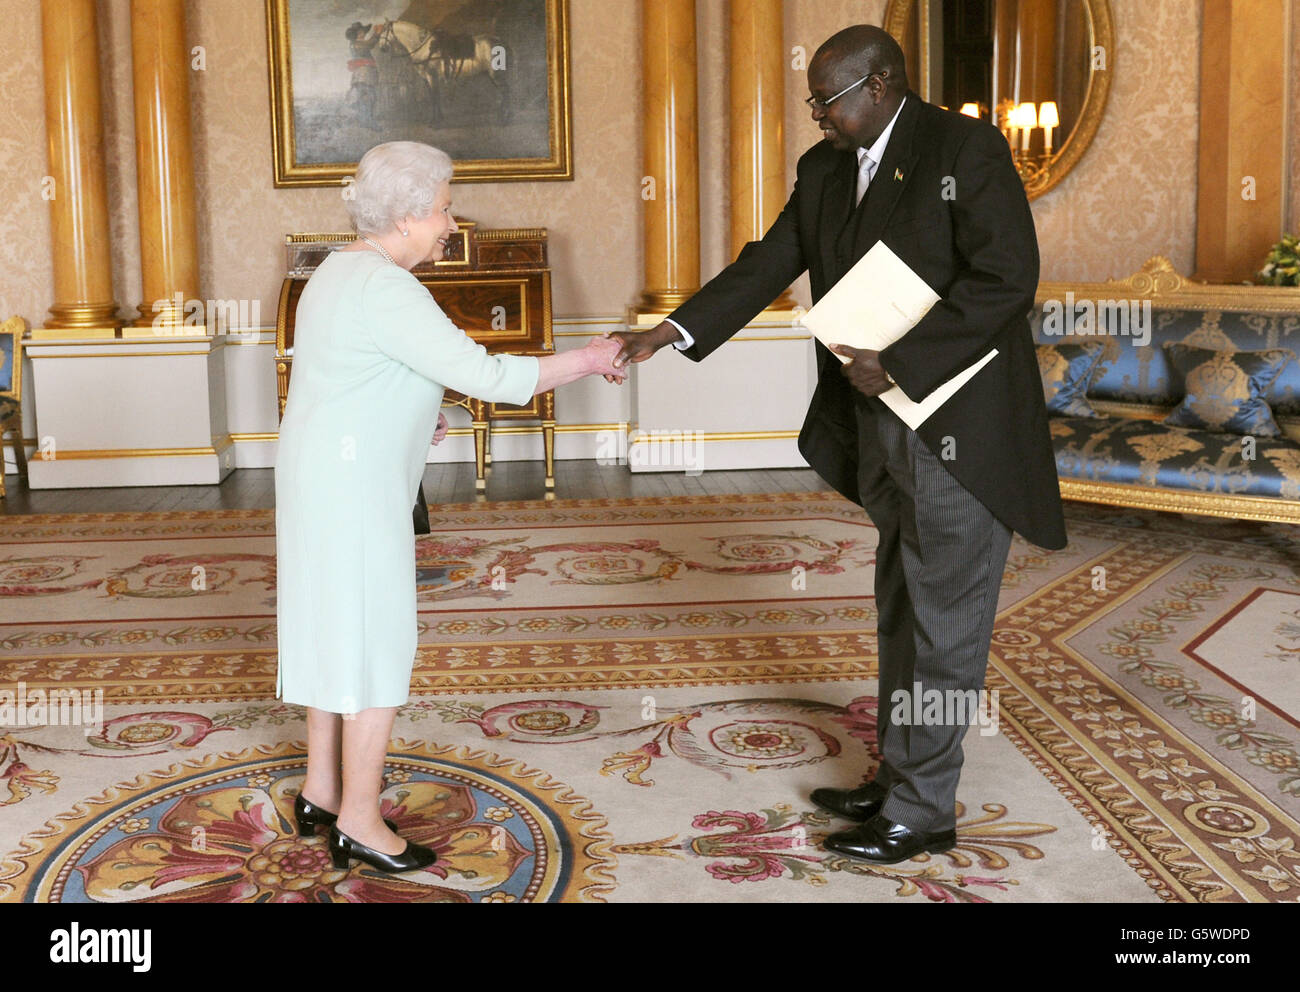 Seine Exzellenz Sabit Abbe Alley wird heute von der Königin Elizabeth II. Im Buckingham Palace in London empfangen, wo er ihr sein Beglaubigungsschreiben als Botschafter der Republik Südsudan beim Gericht von St. James's überreichte. Stockfoto